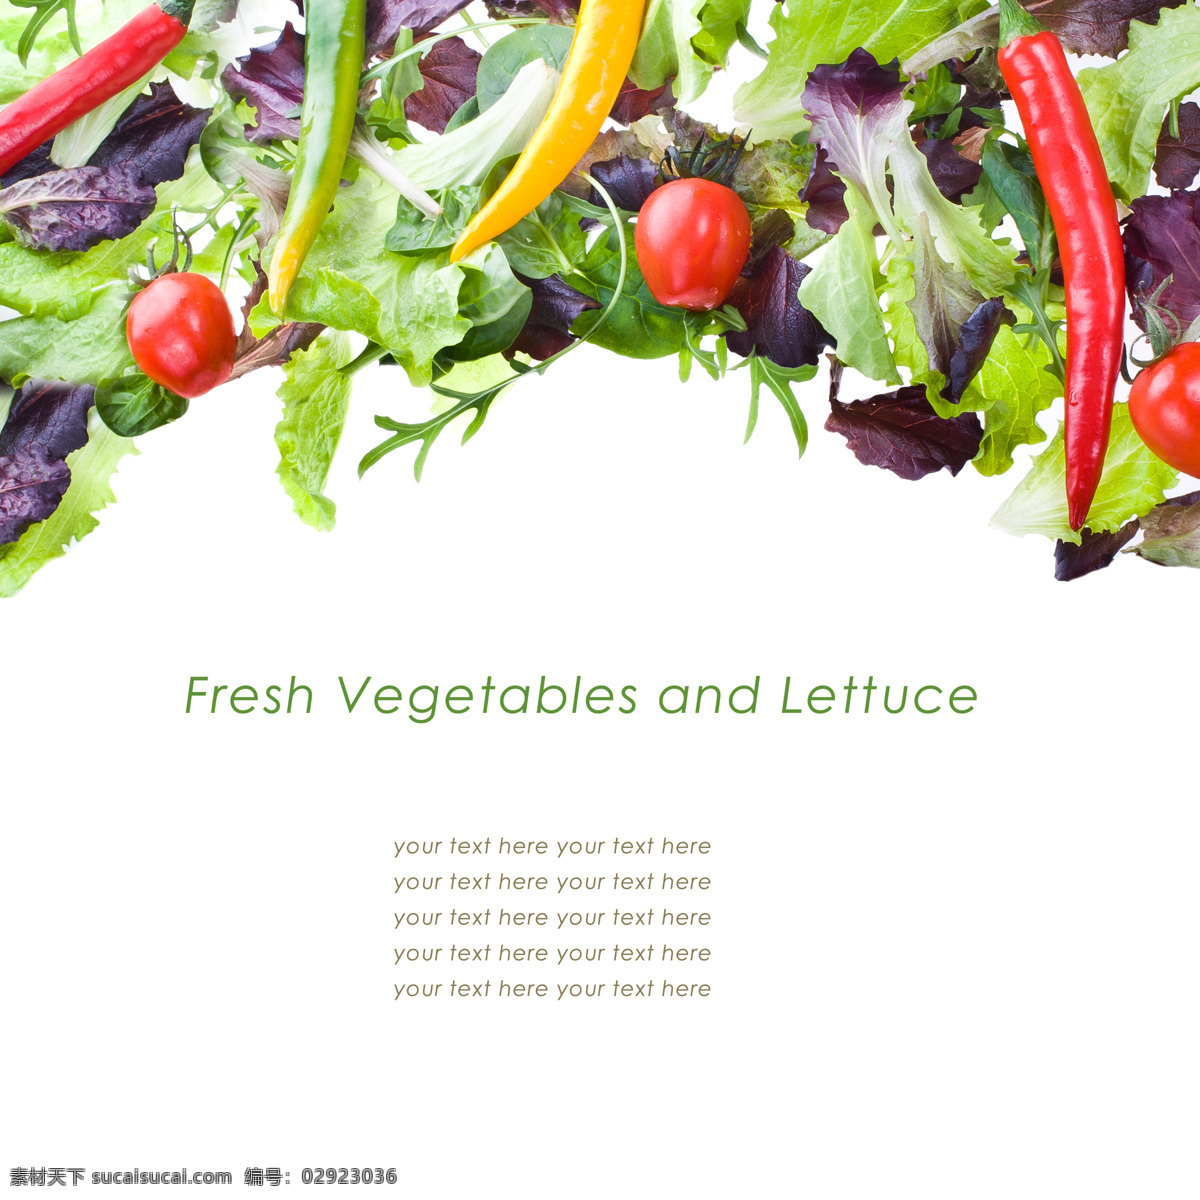 新鲜蔬菜背景 辣椒 番茄 菜叶子 蔬菜背景 西红柿 新鲜蔬菜 水果蔬菜 餐饮美食 白色